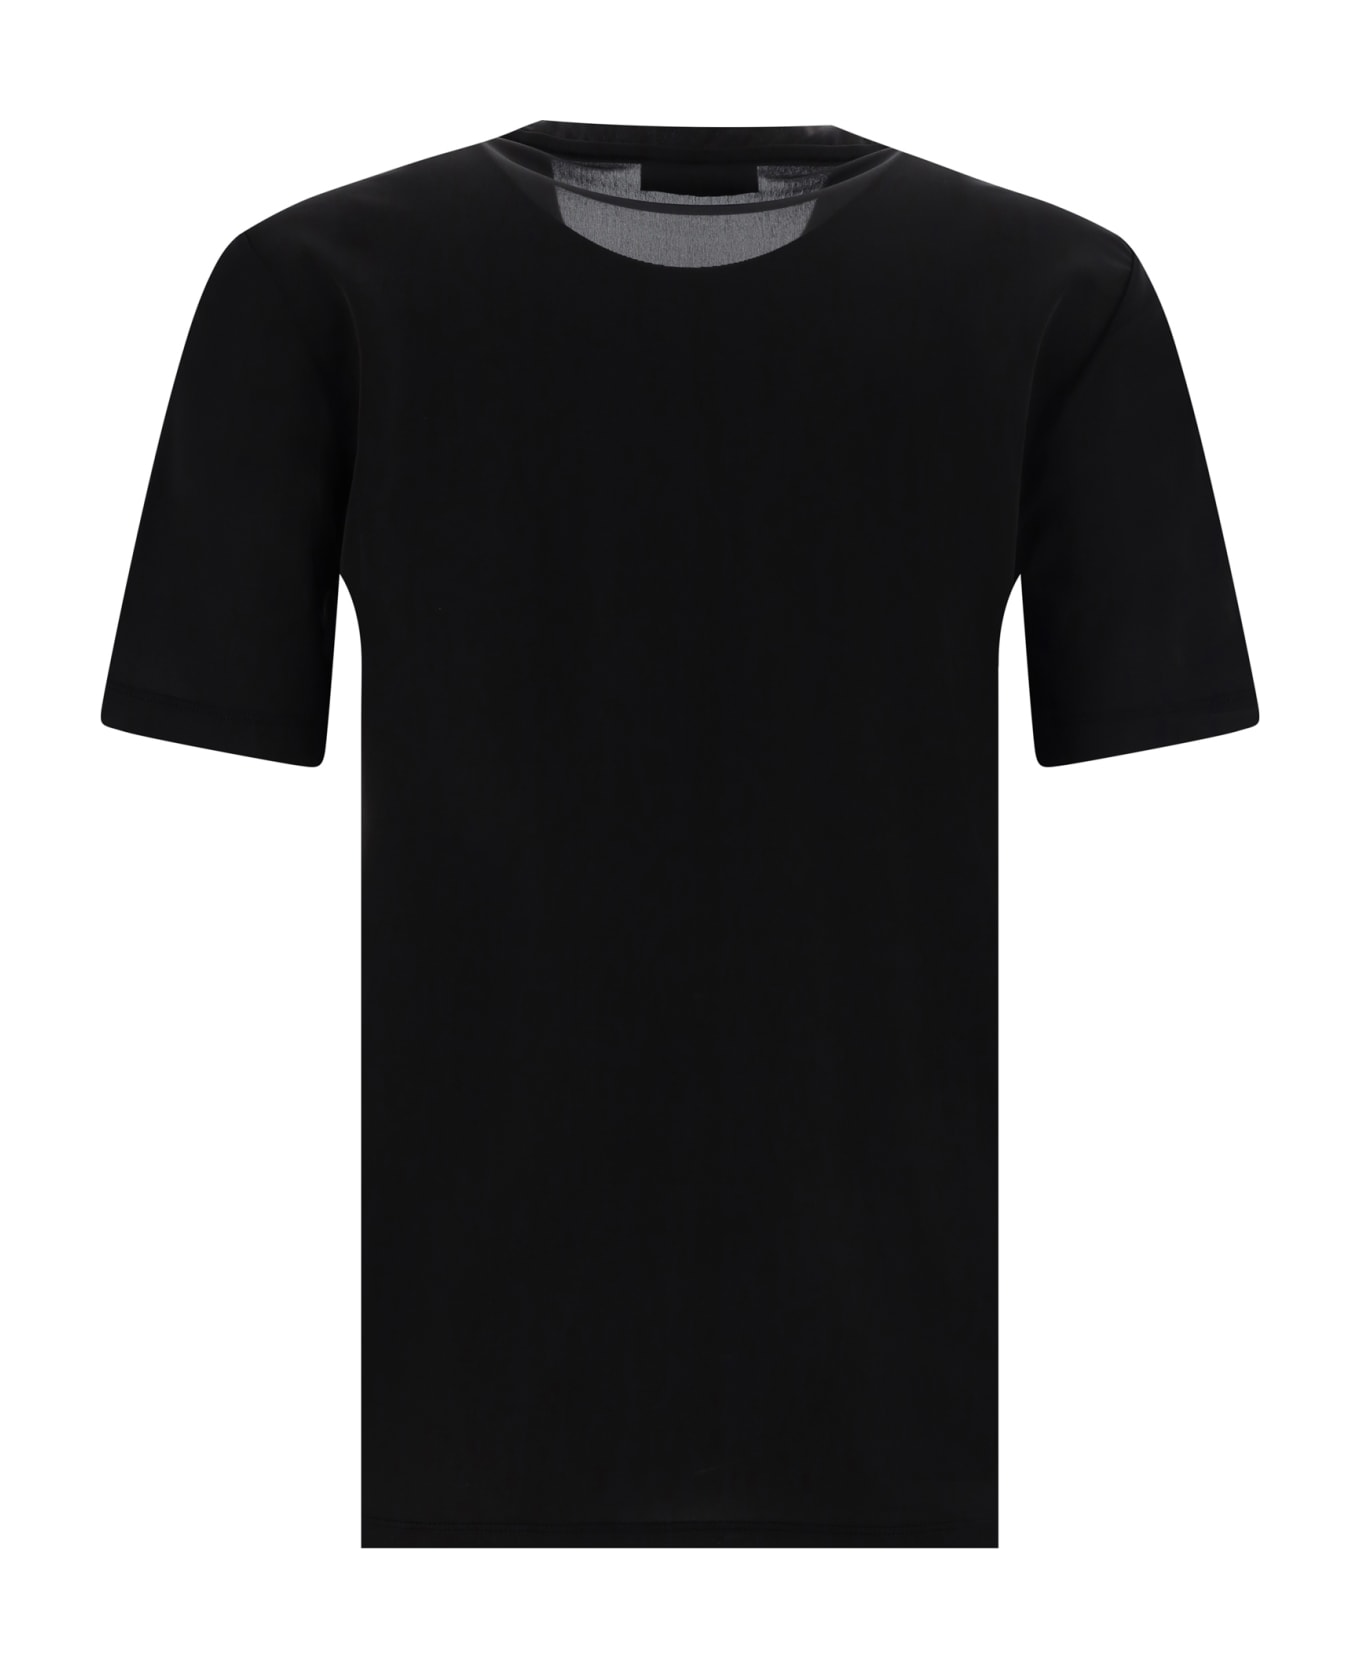 Paco Rabanne T-shirt - BLACK Tシャツ